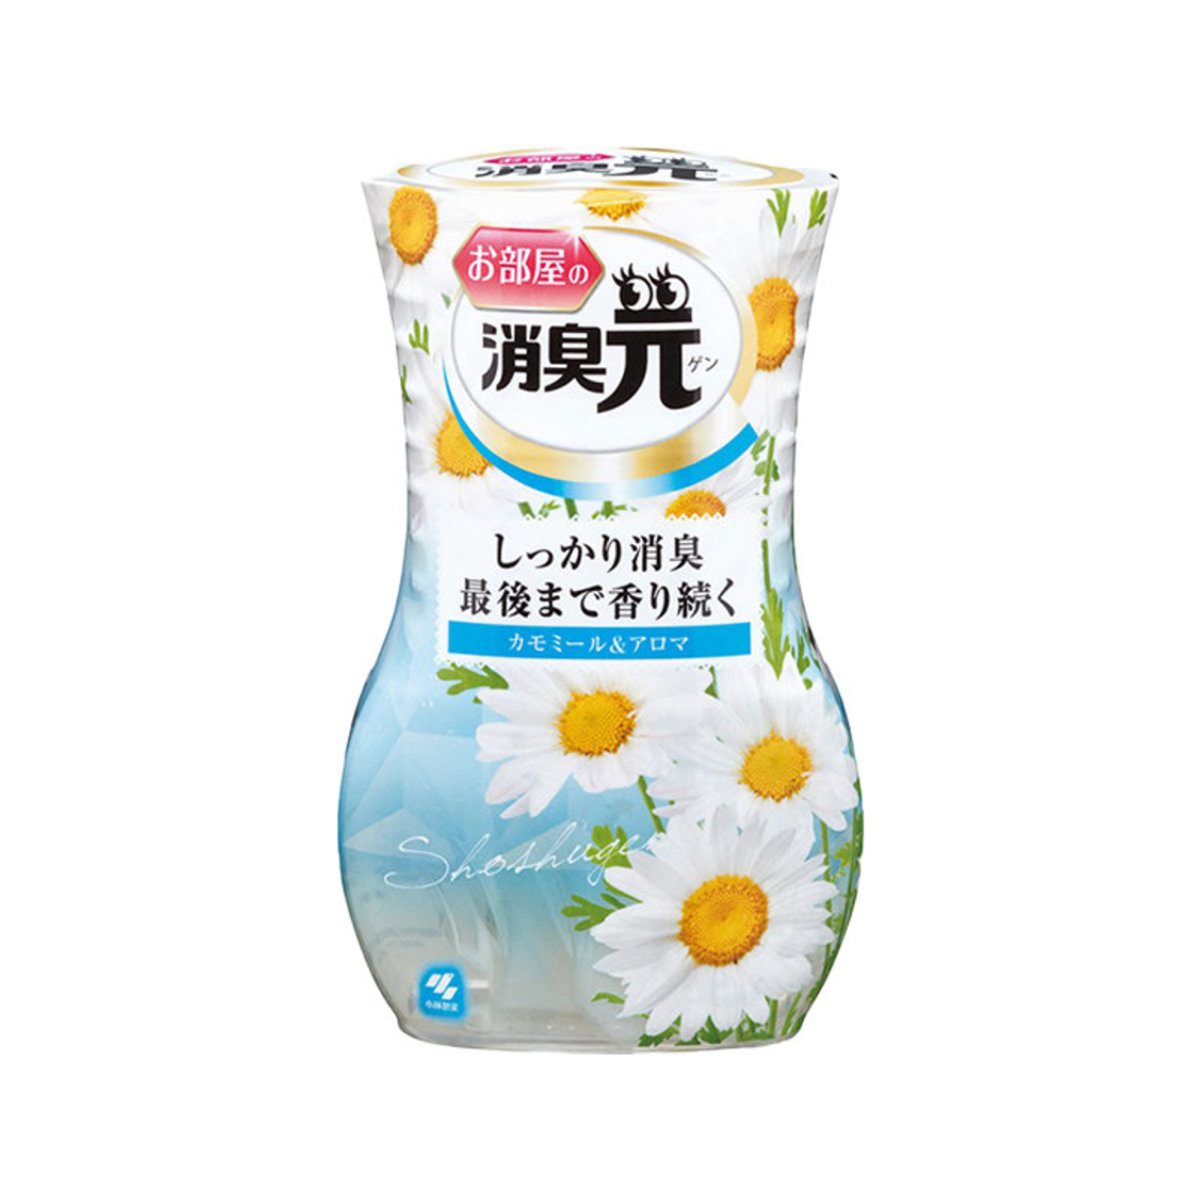 室內消臭元芳香劑 400ml (白黃色-洋甘菊味)(平行進口)